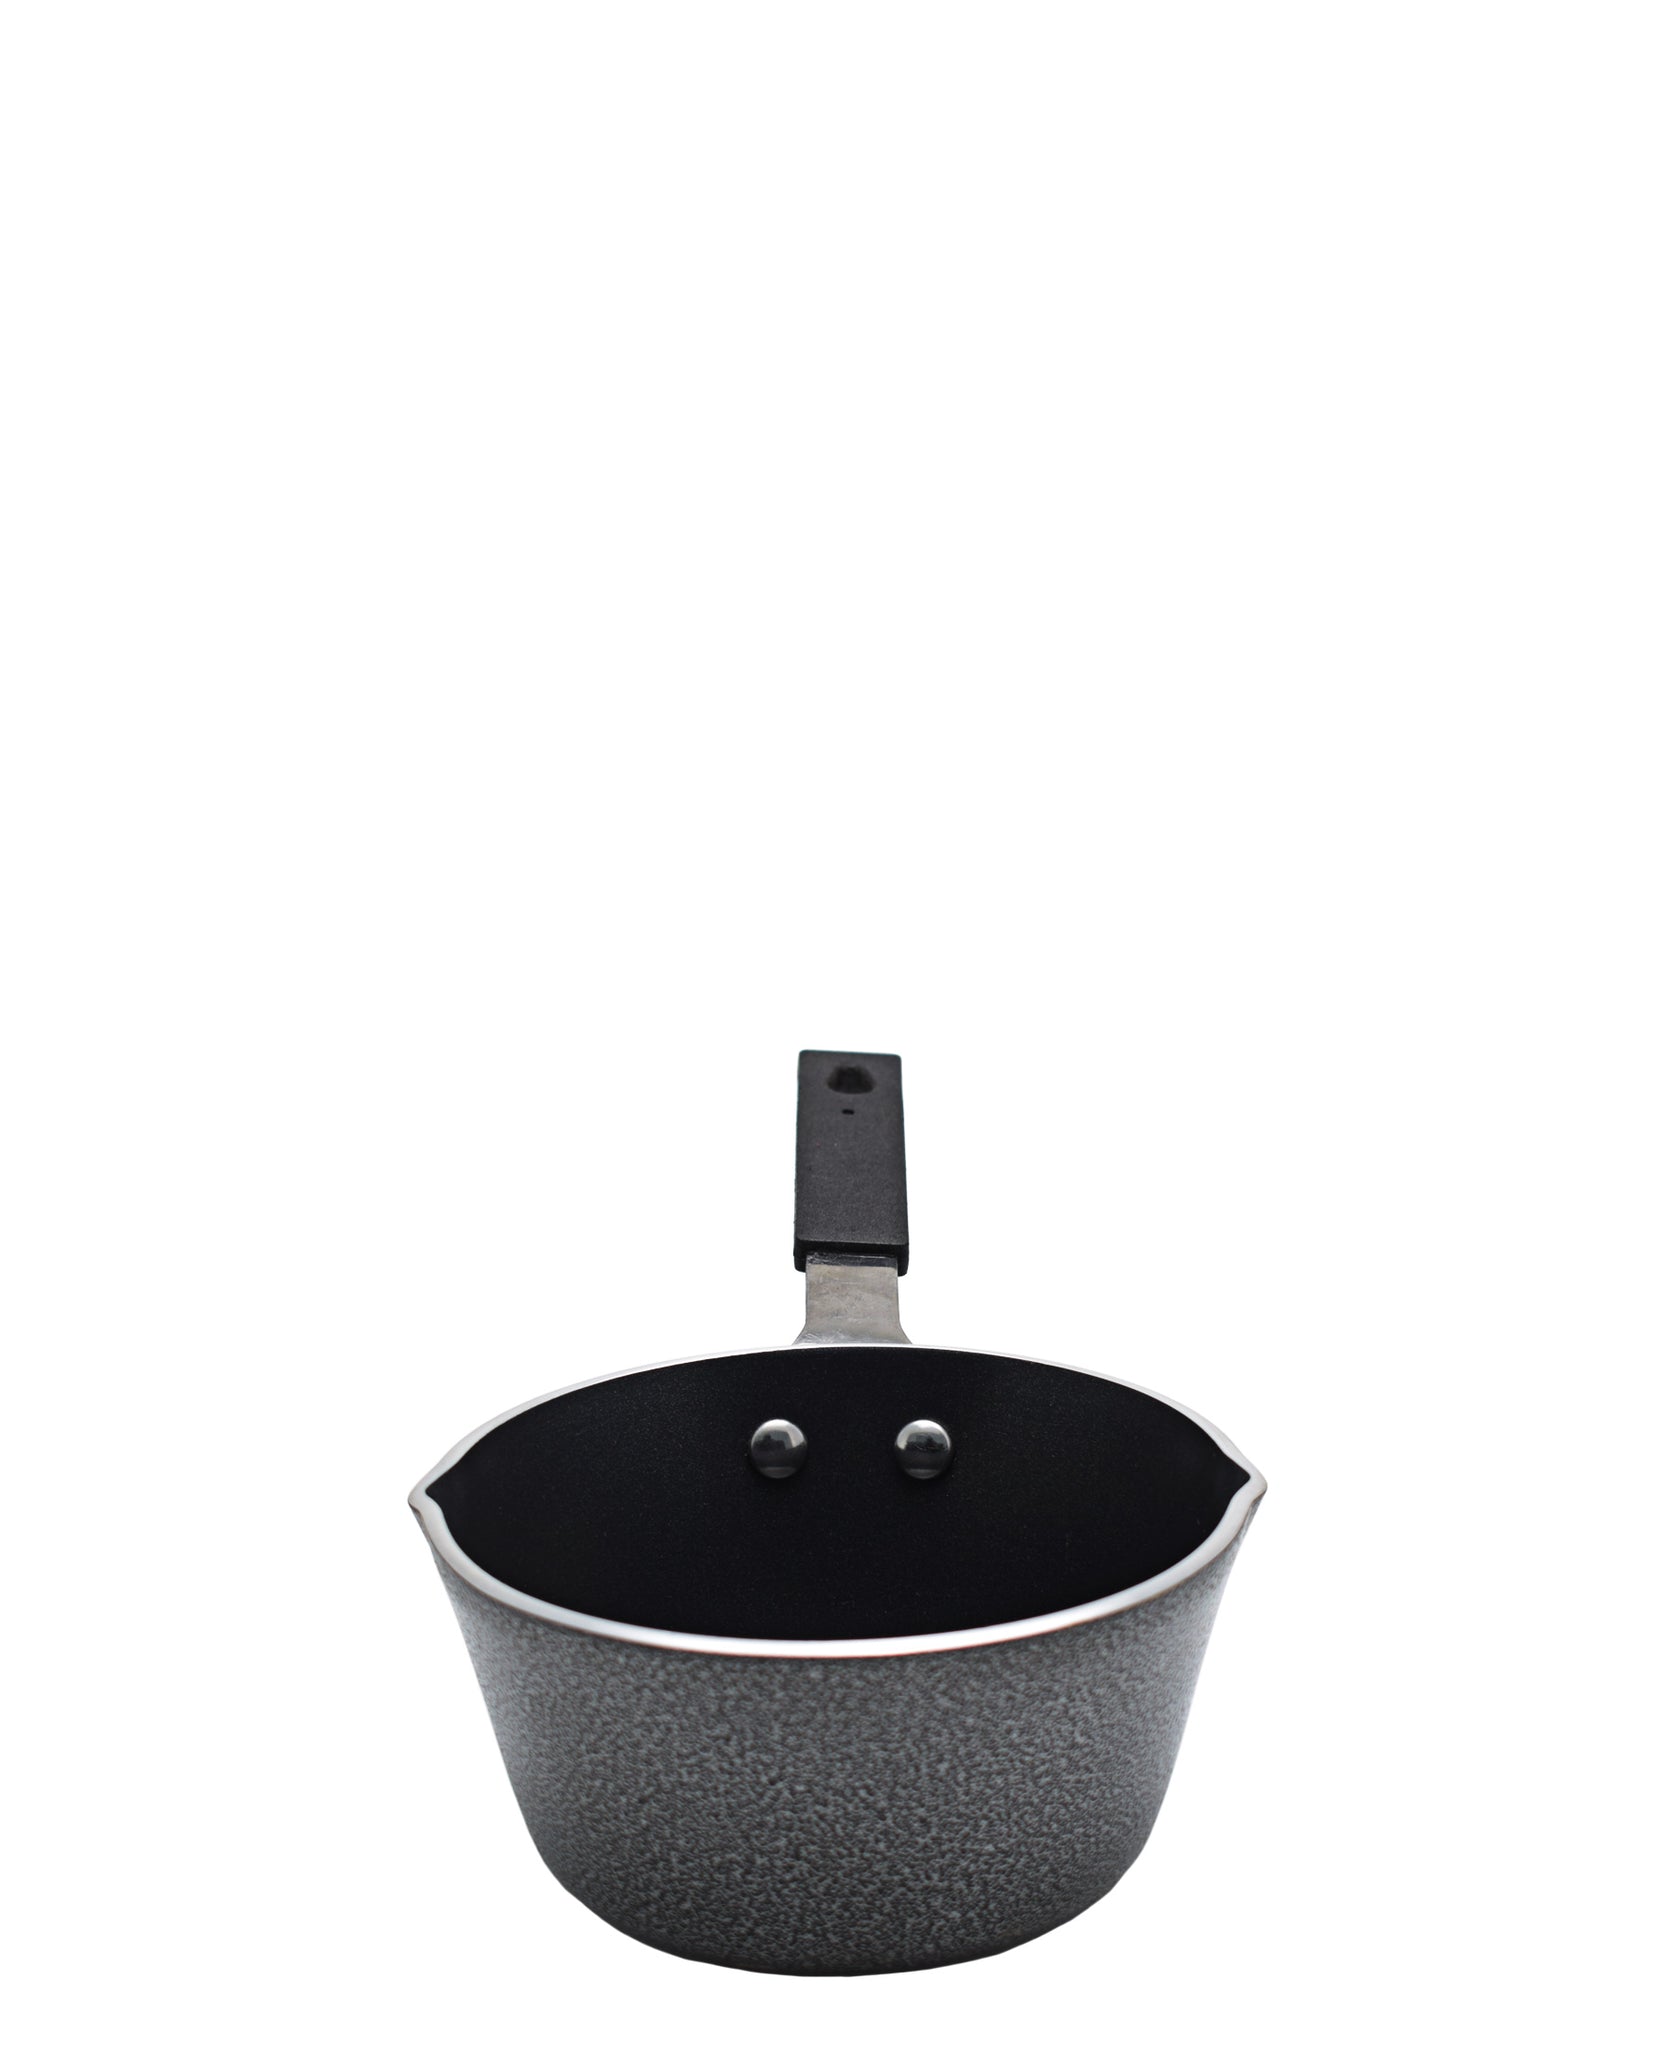 Casio Milk Pot 13cm - Black